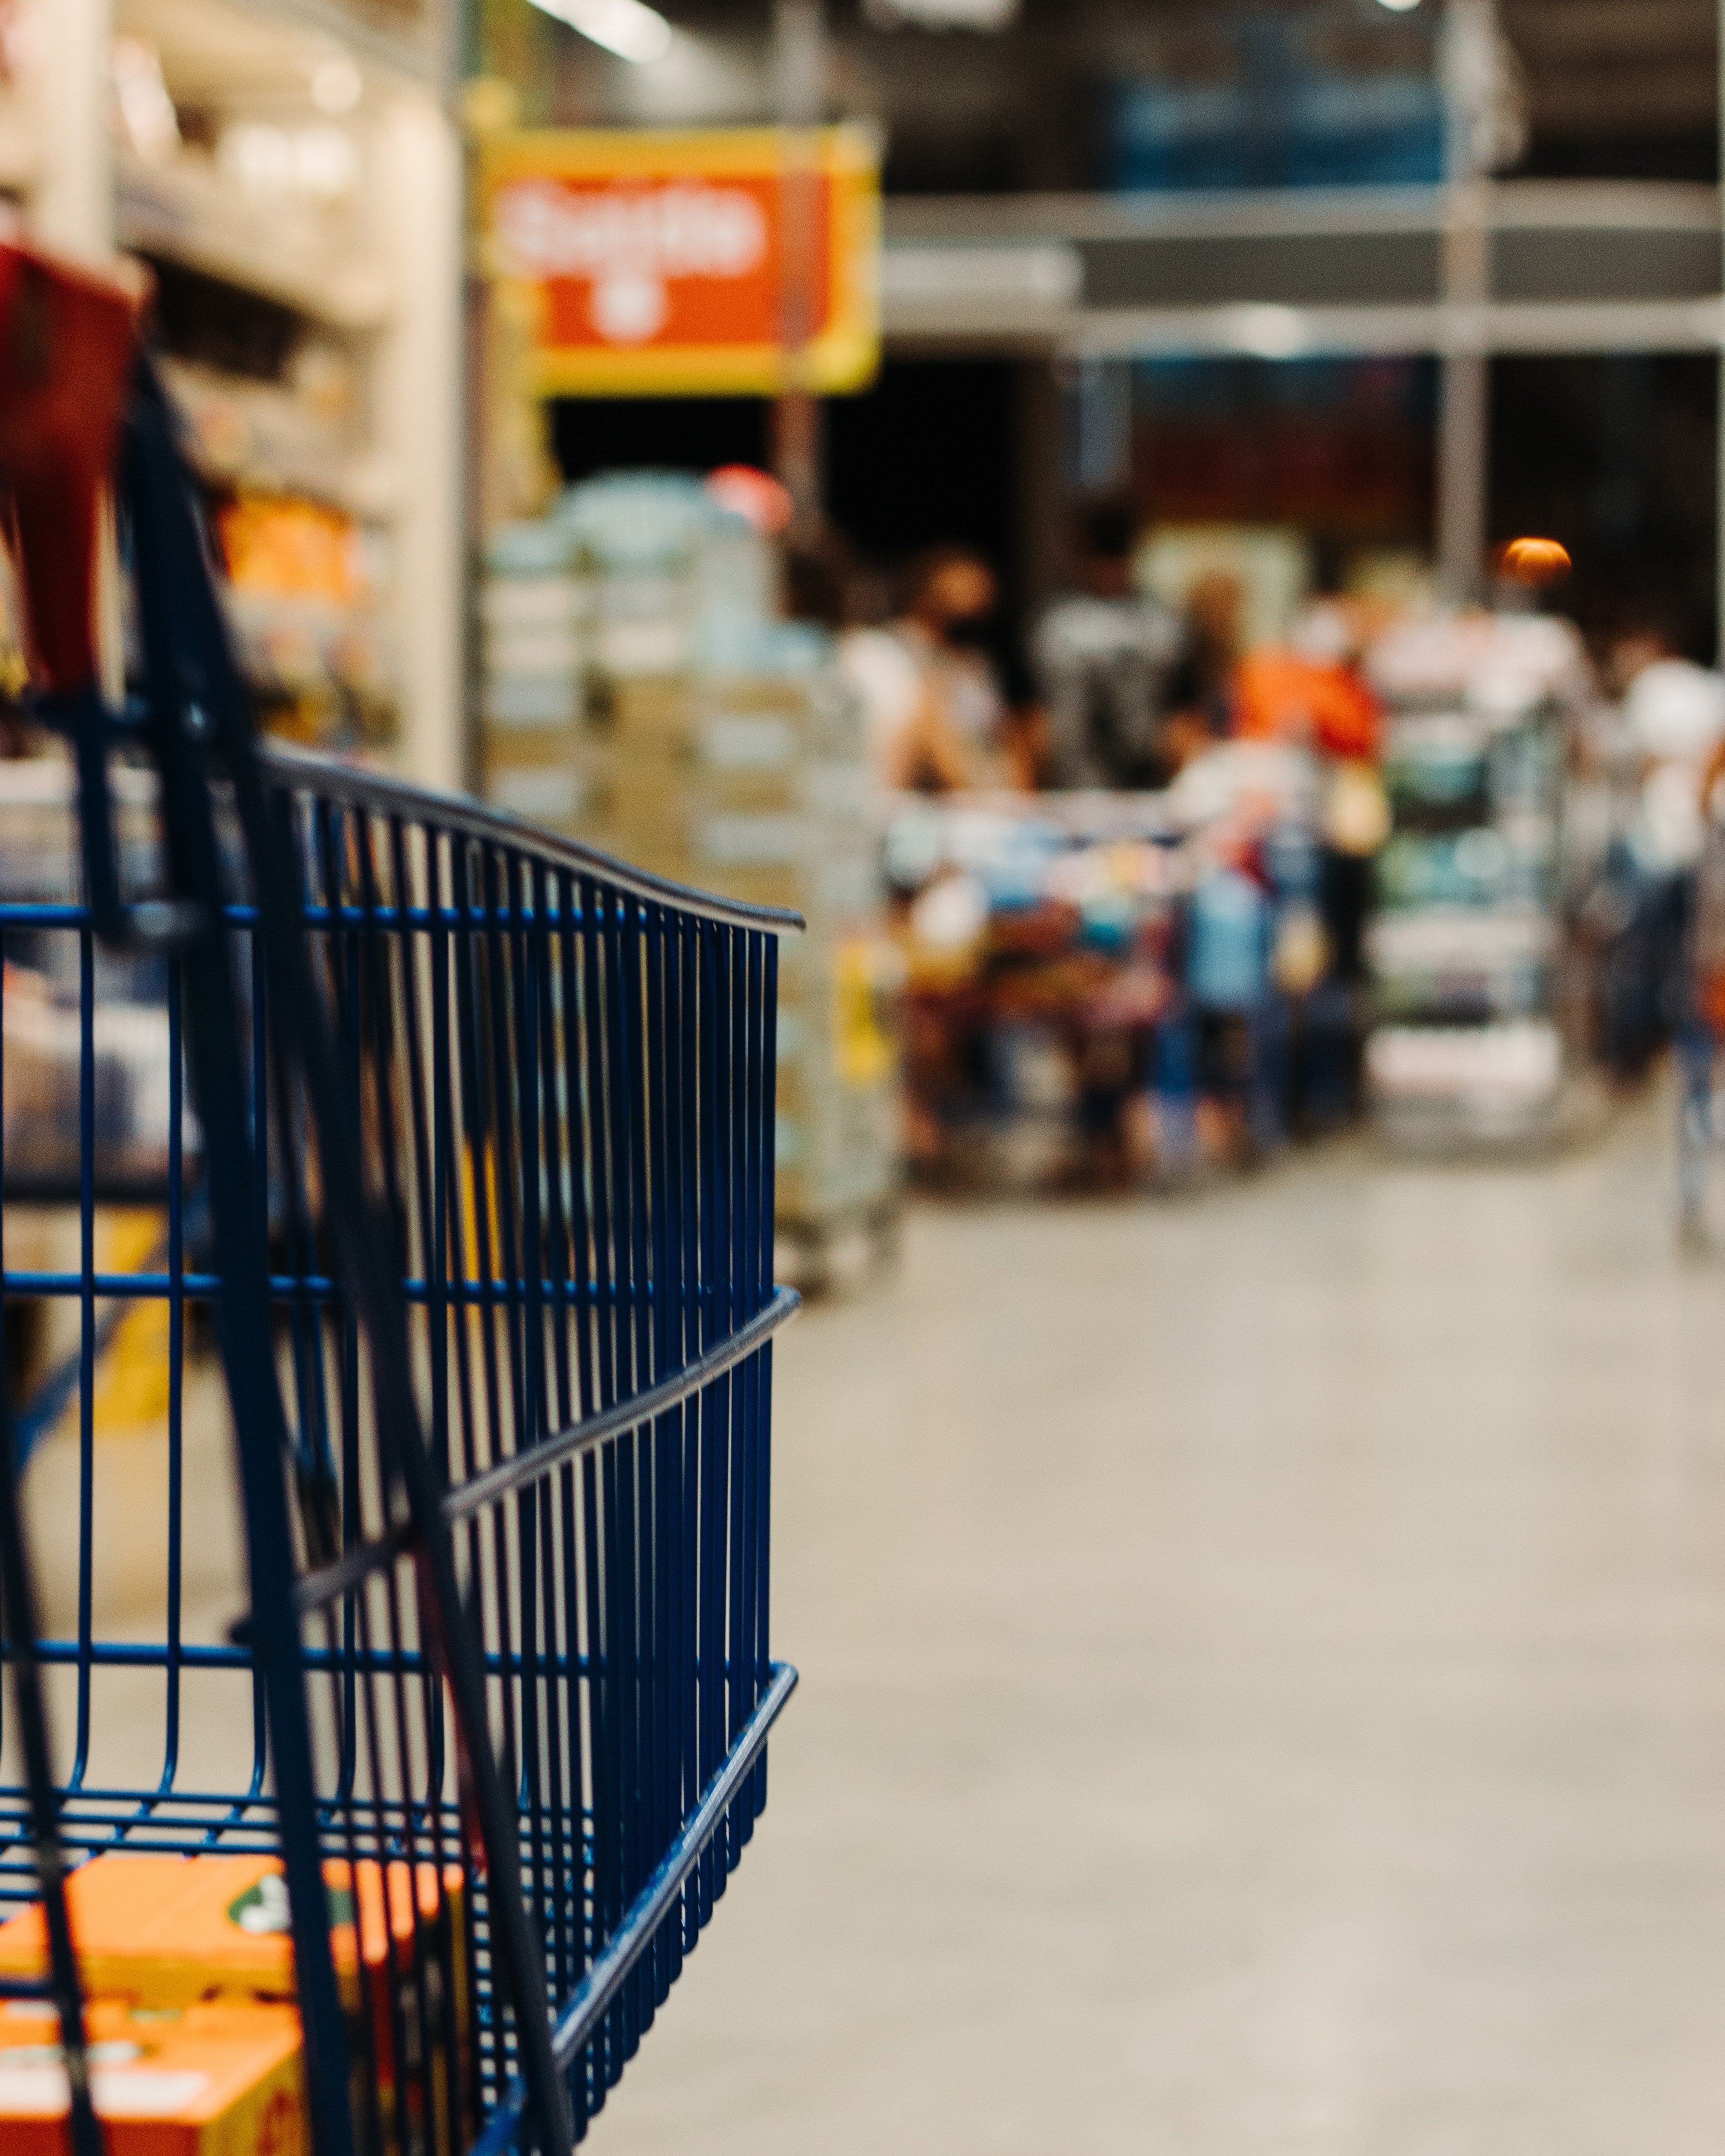 La inflació fa que tornem a comprar marques blanques als supermercats